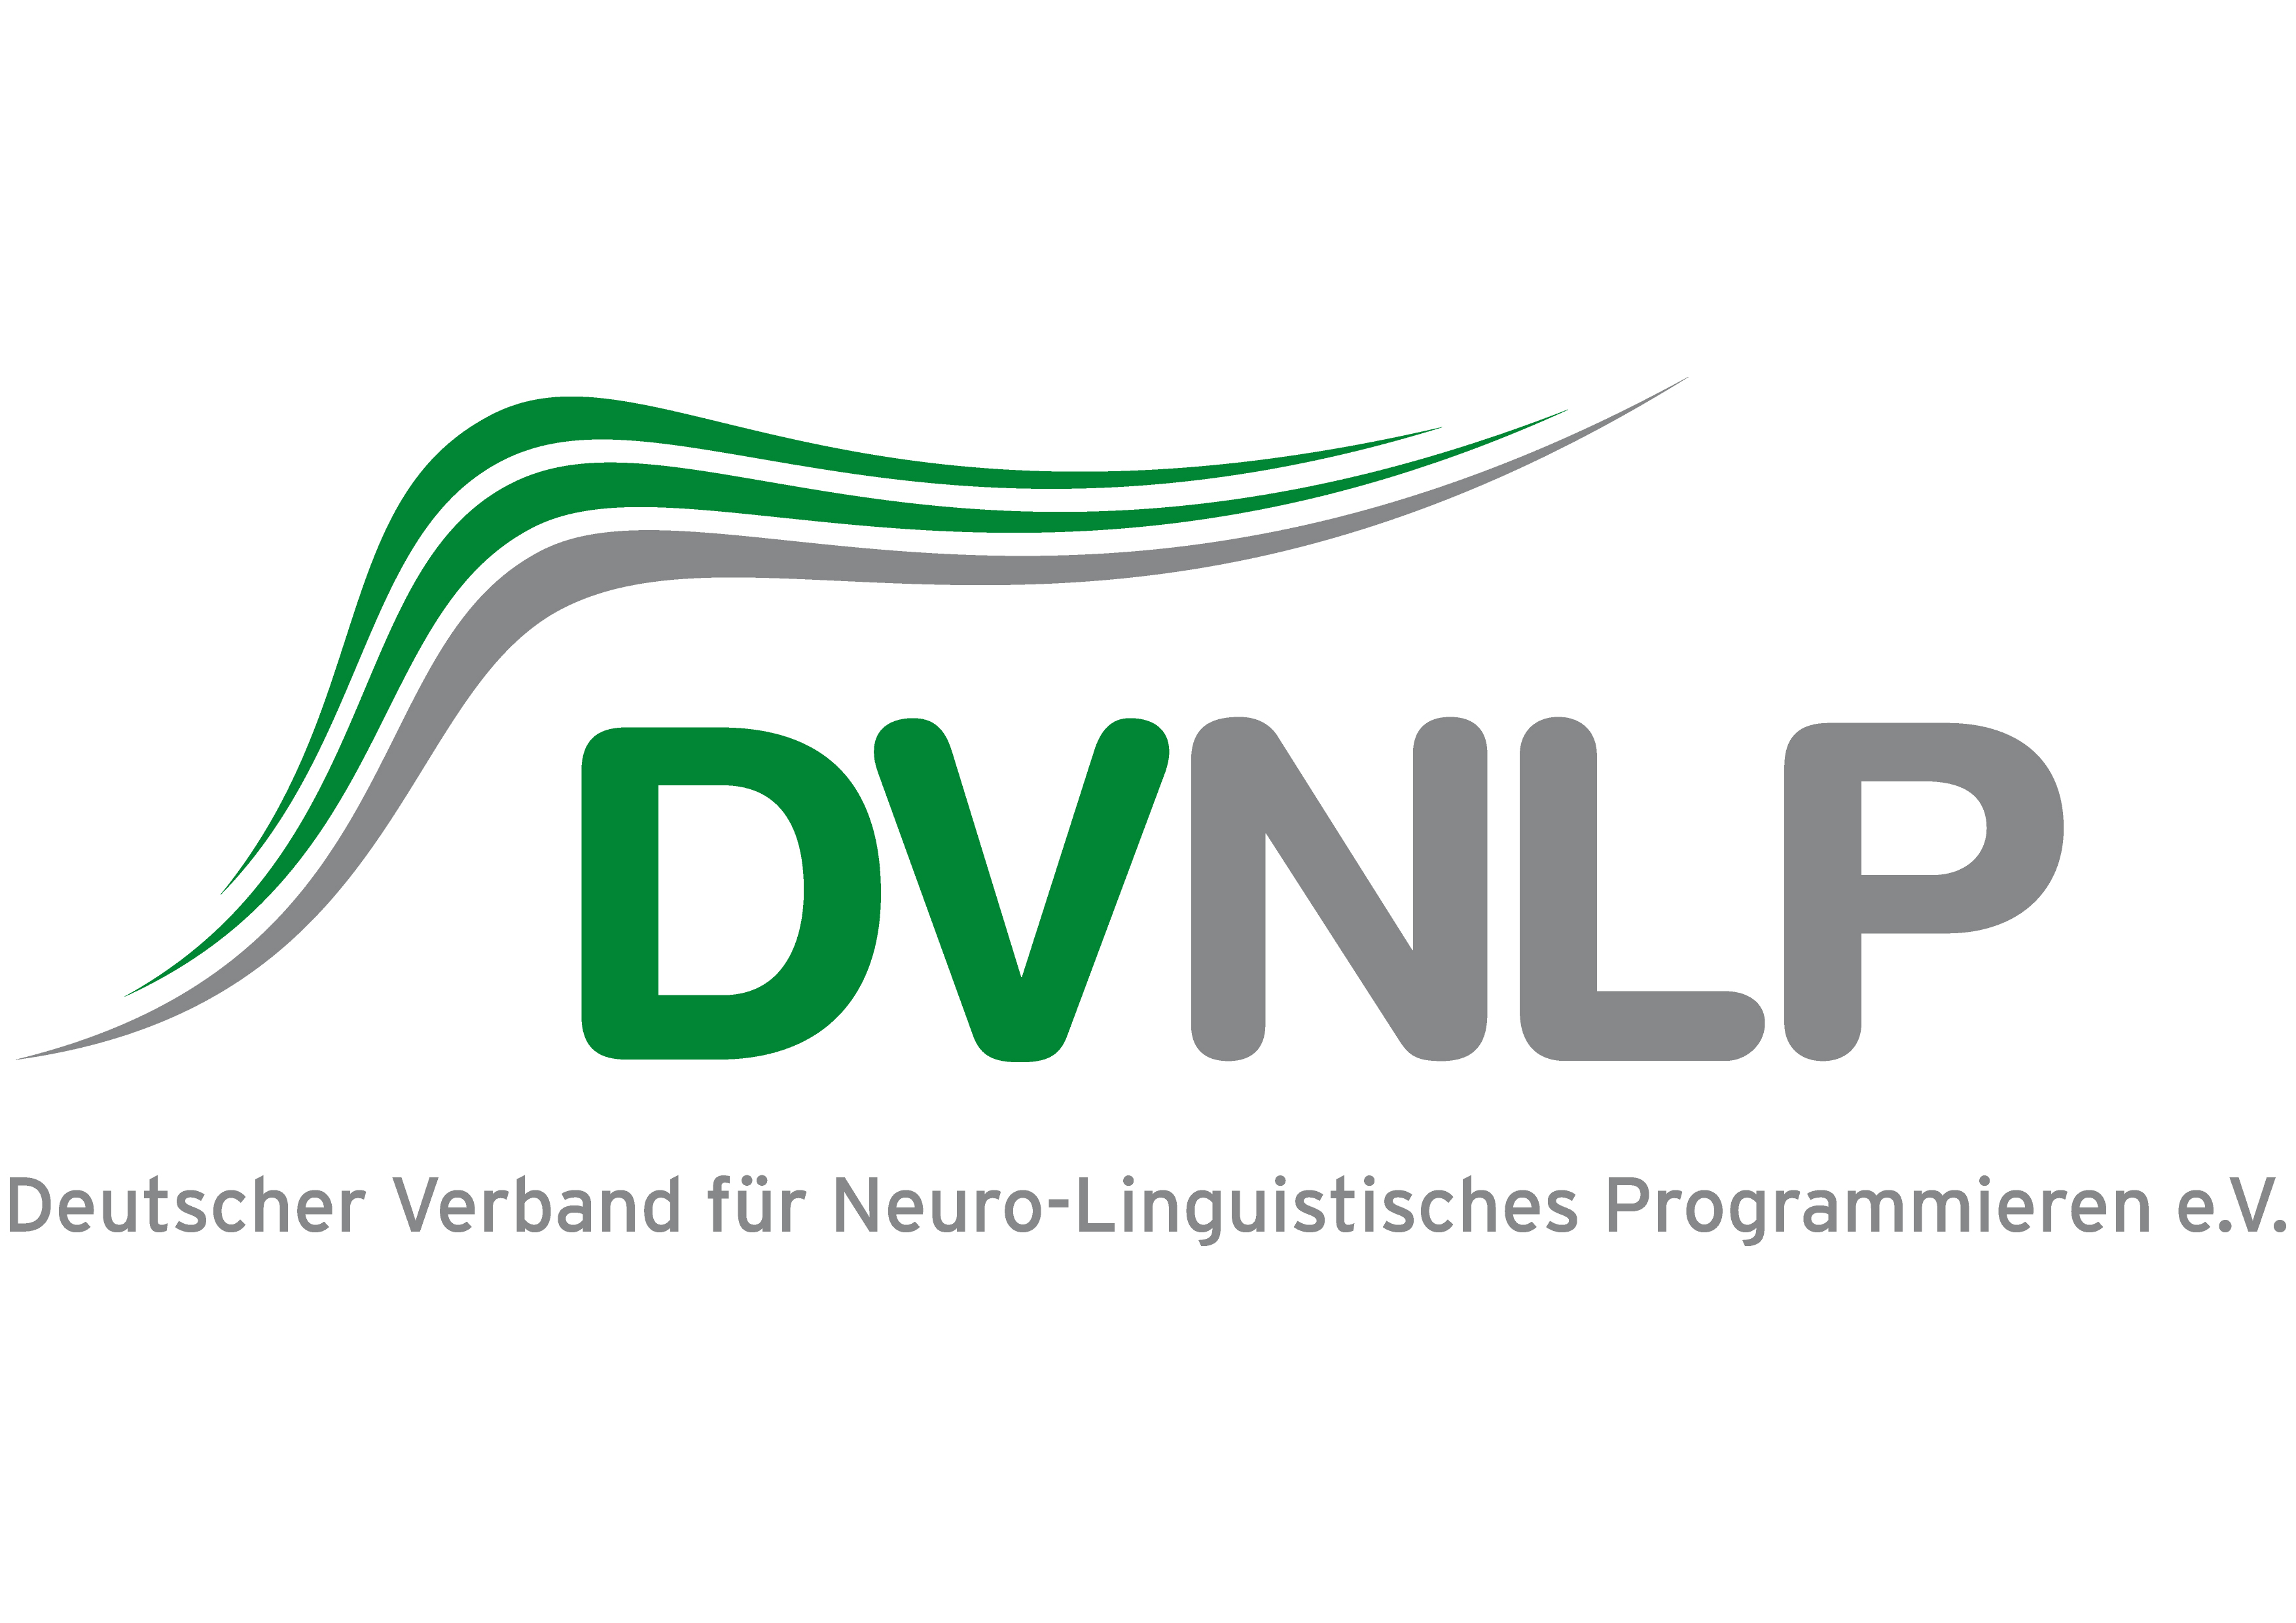 Deutscher Verband für Neuro-Linguistisches Programmieren e.V. (DVNLP) Logo